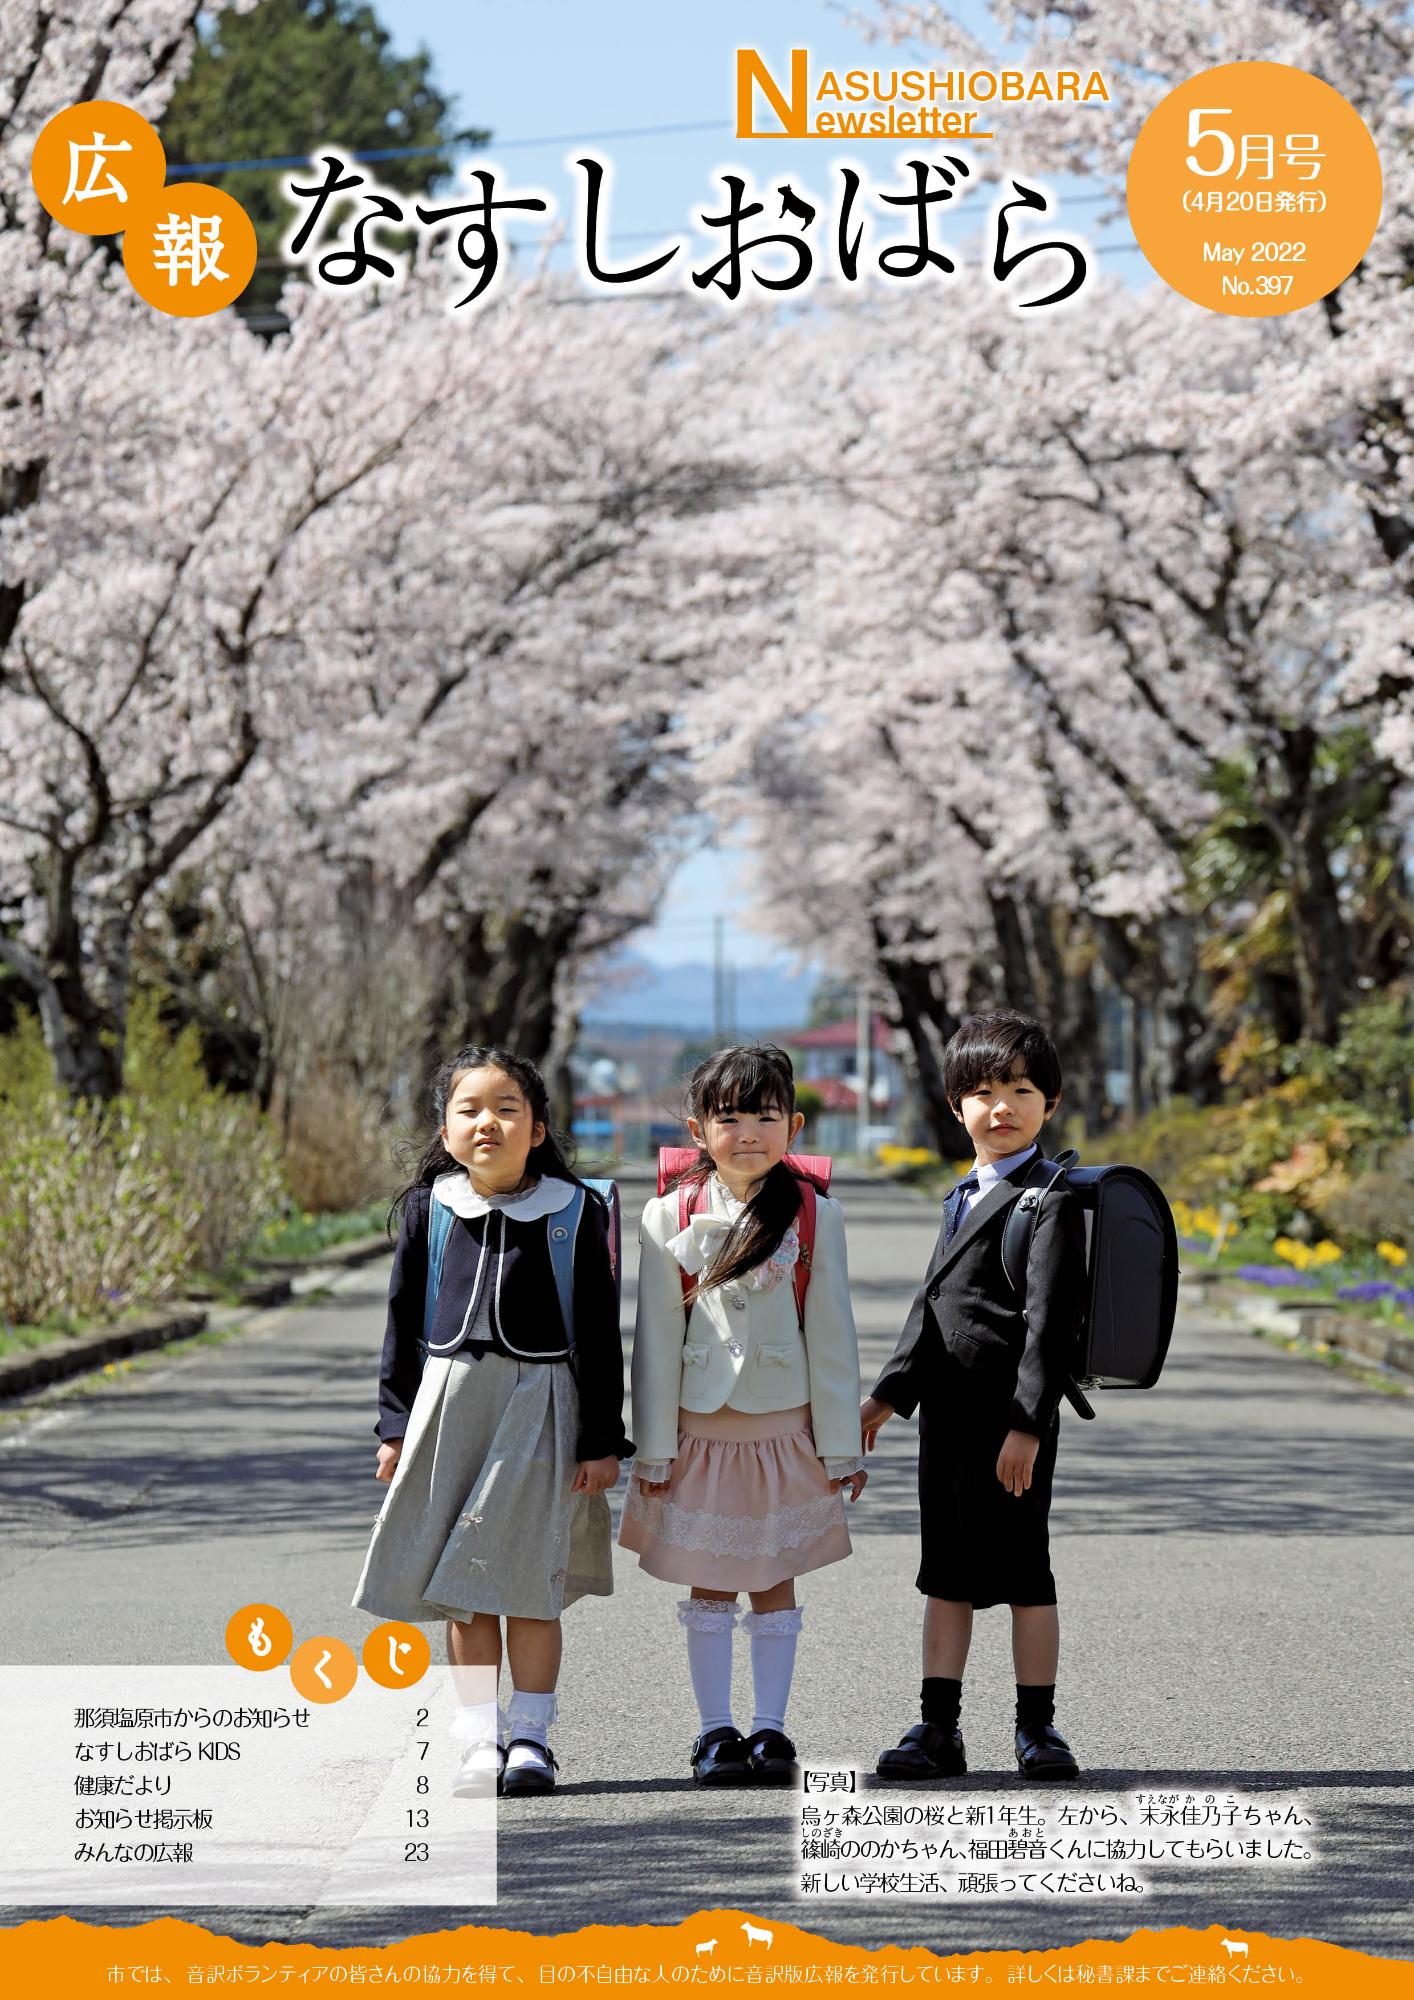 広報なすしおばら4月号表紙「烏ヶ森公園の桜と新1年生」